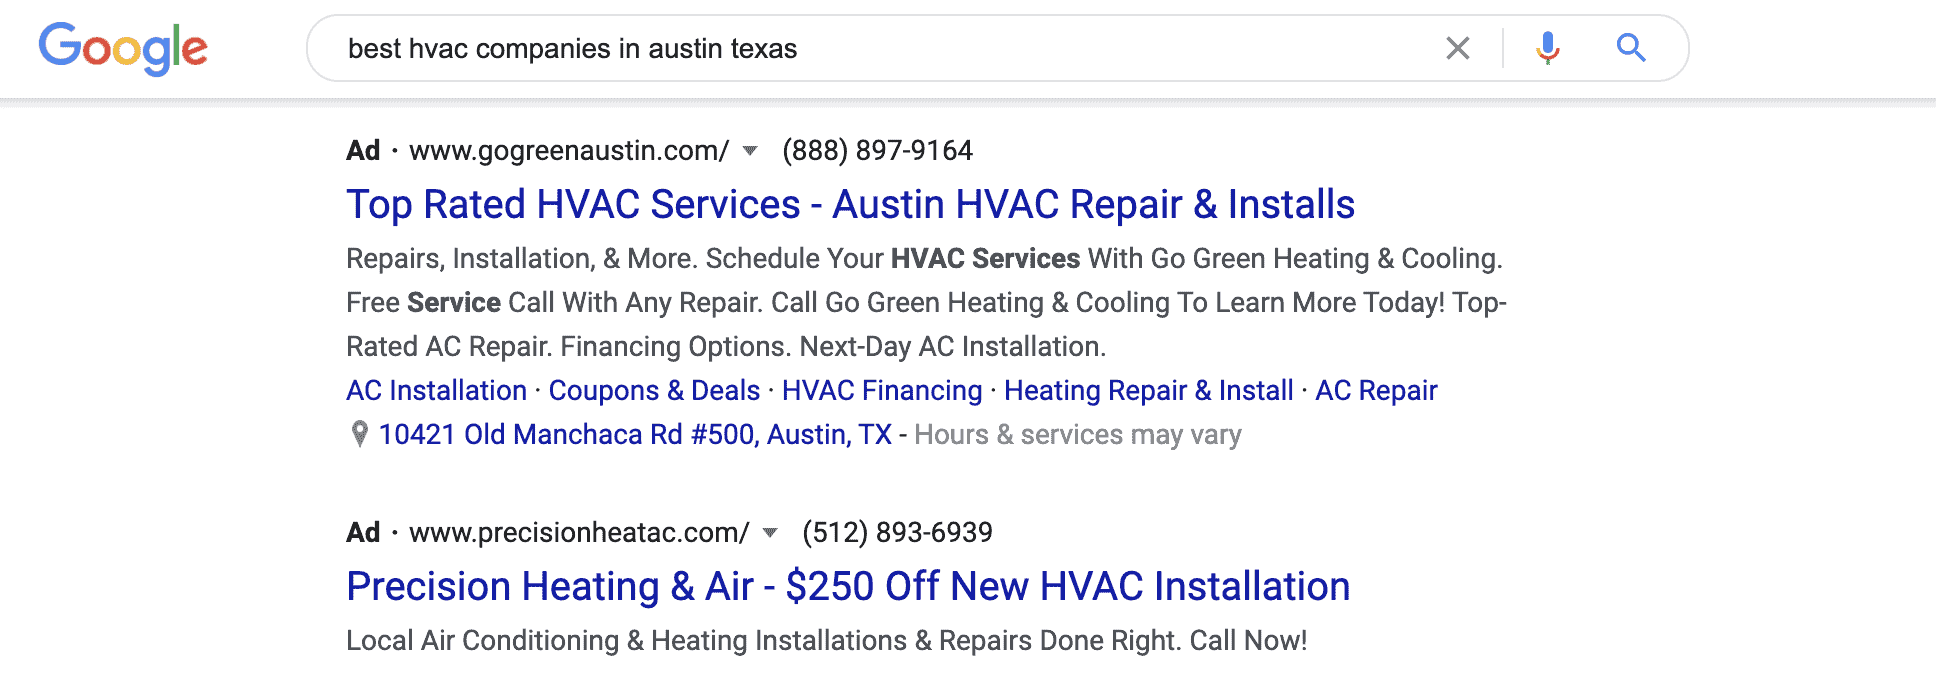 google results for best hvac service